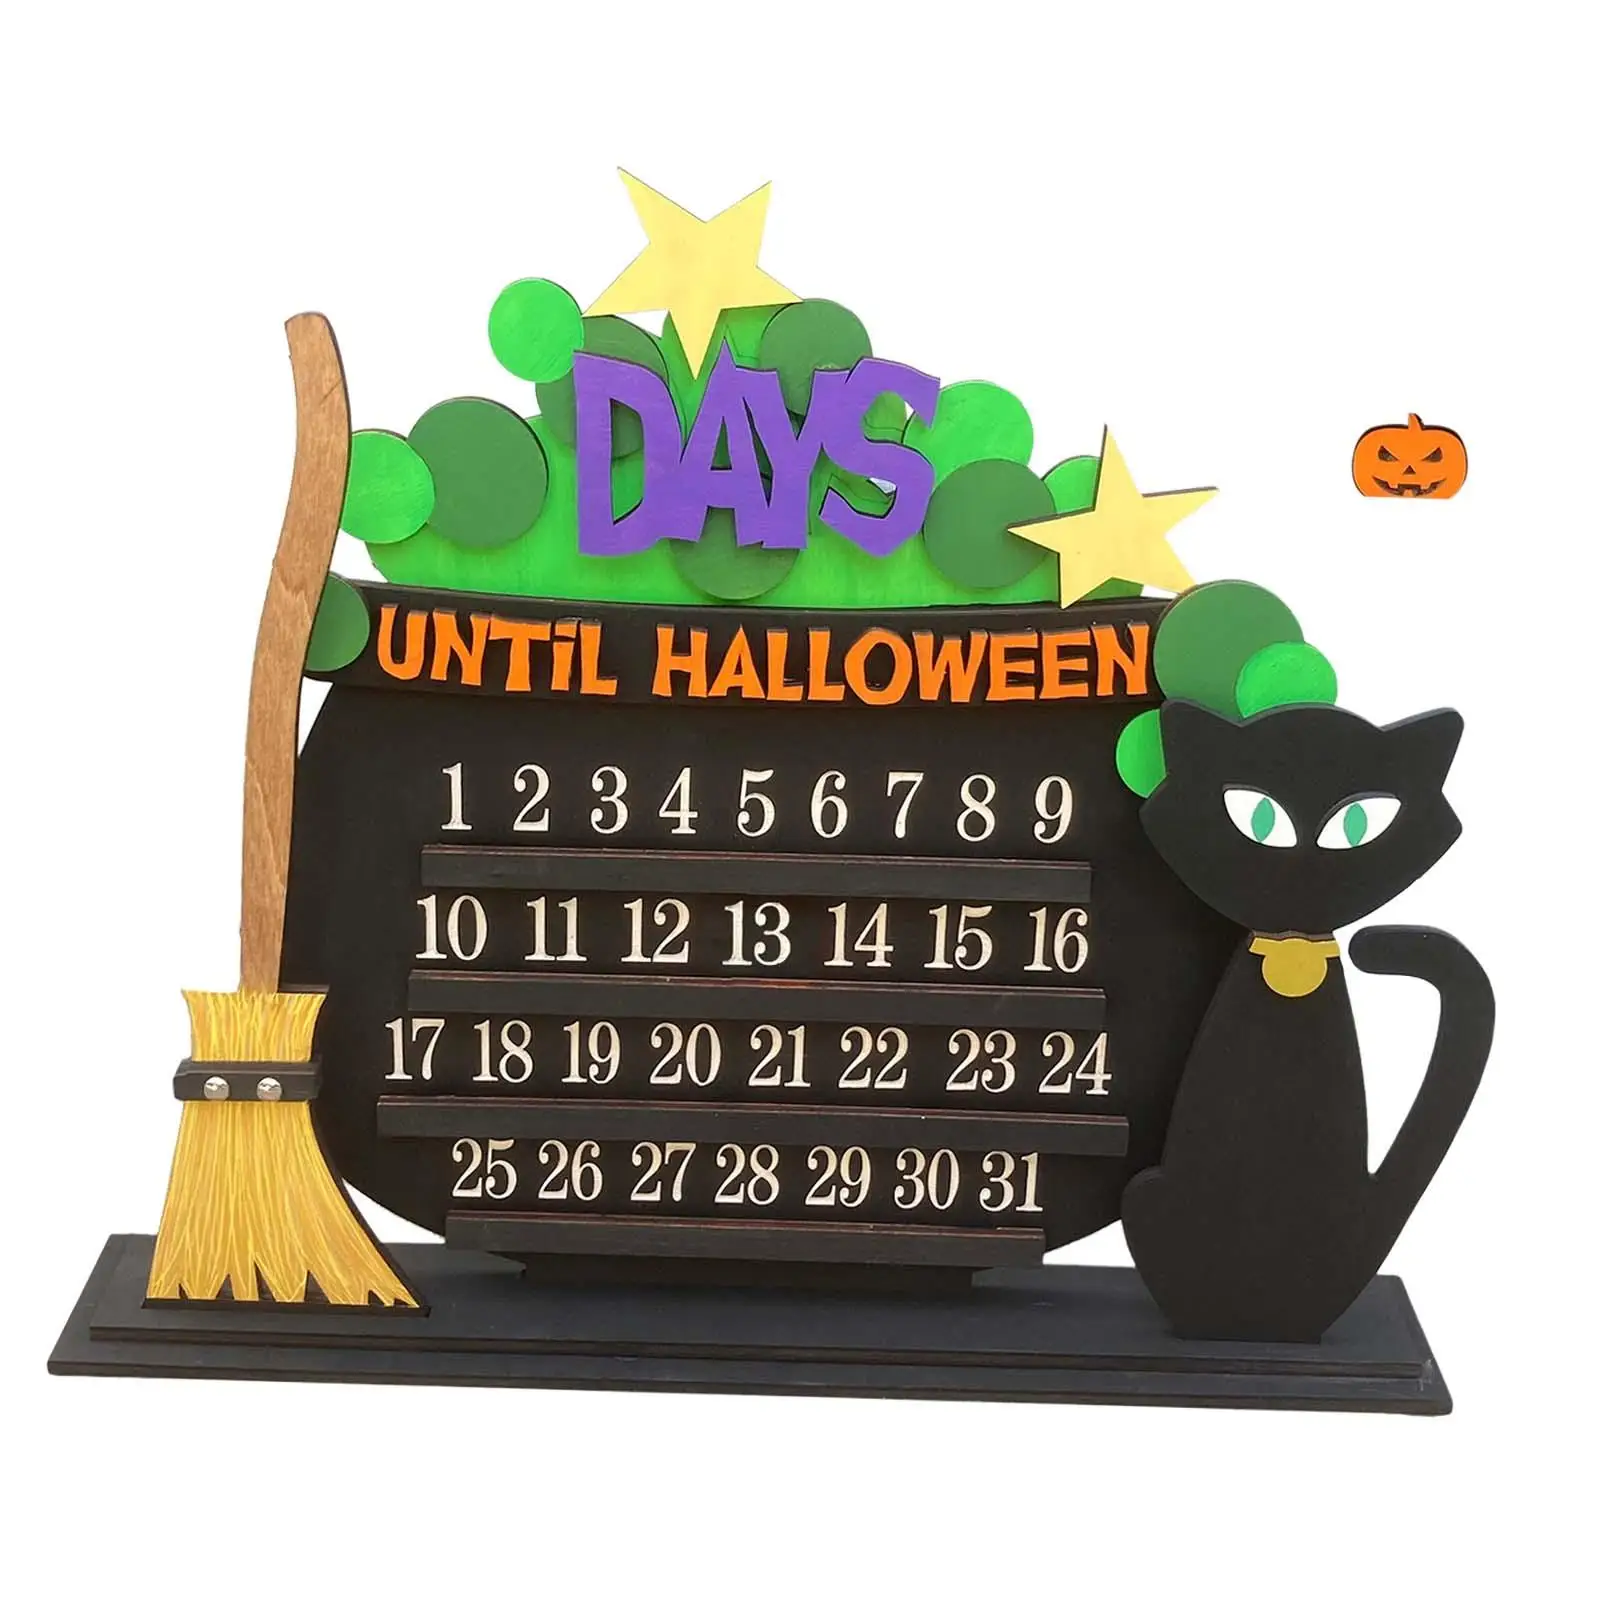 Medinis Helovino advento kalendorius 